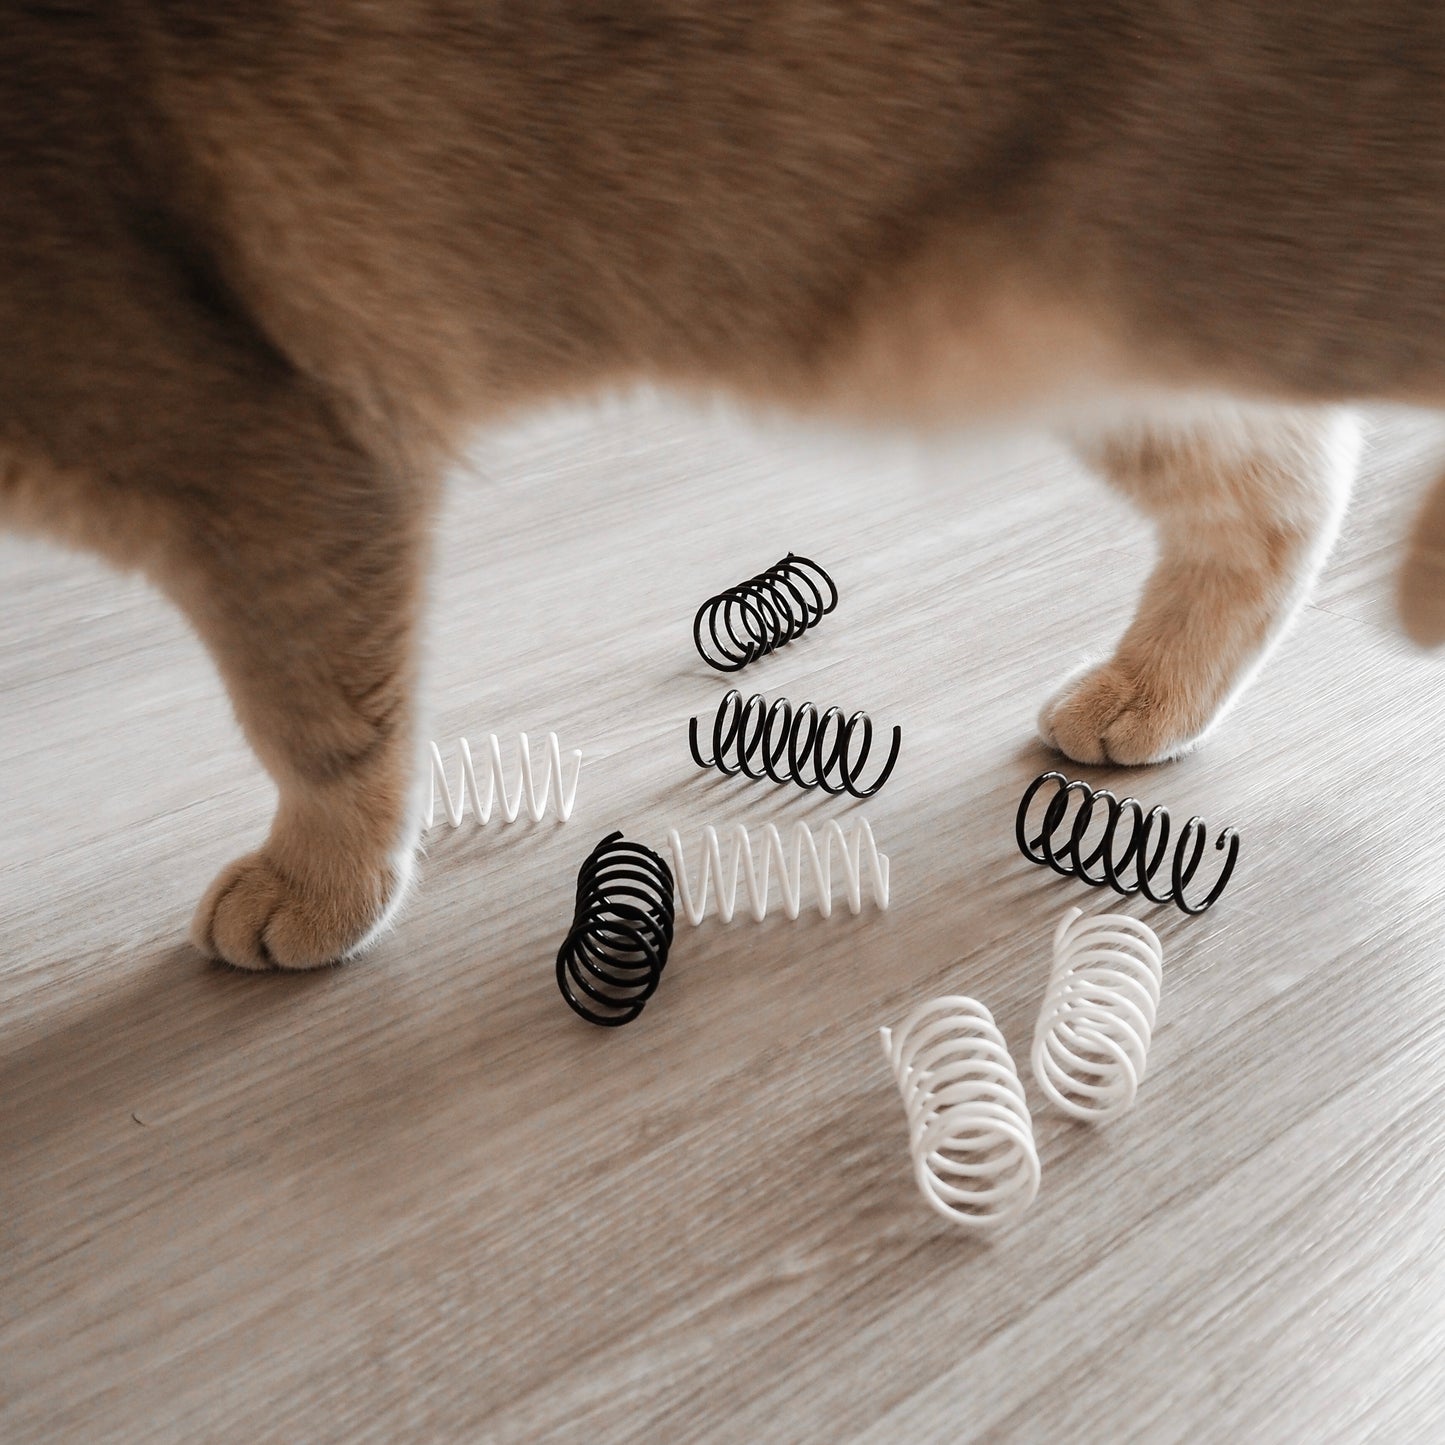 Interaktives Spiralfeder Spielzeug für Katzen in schwarz und weiß.